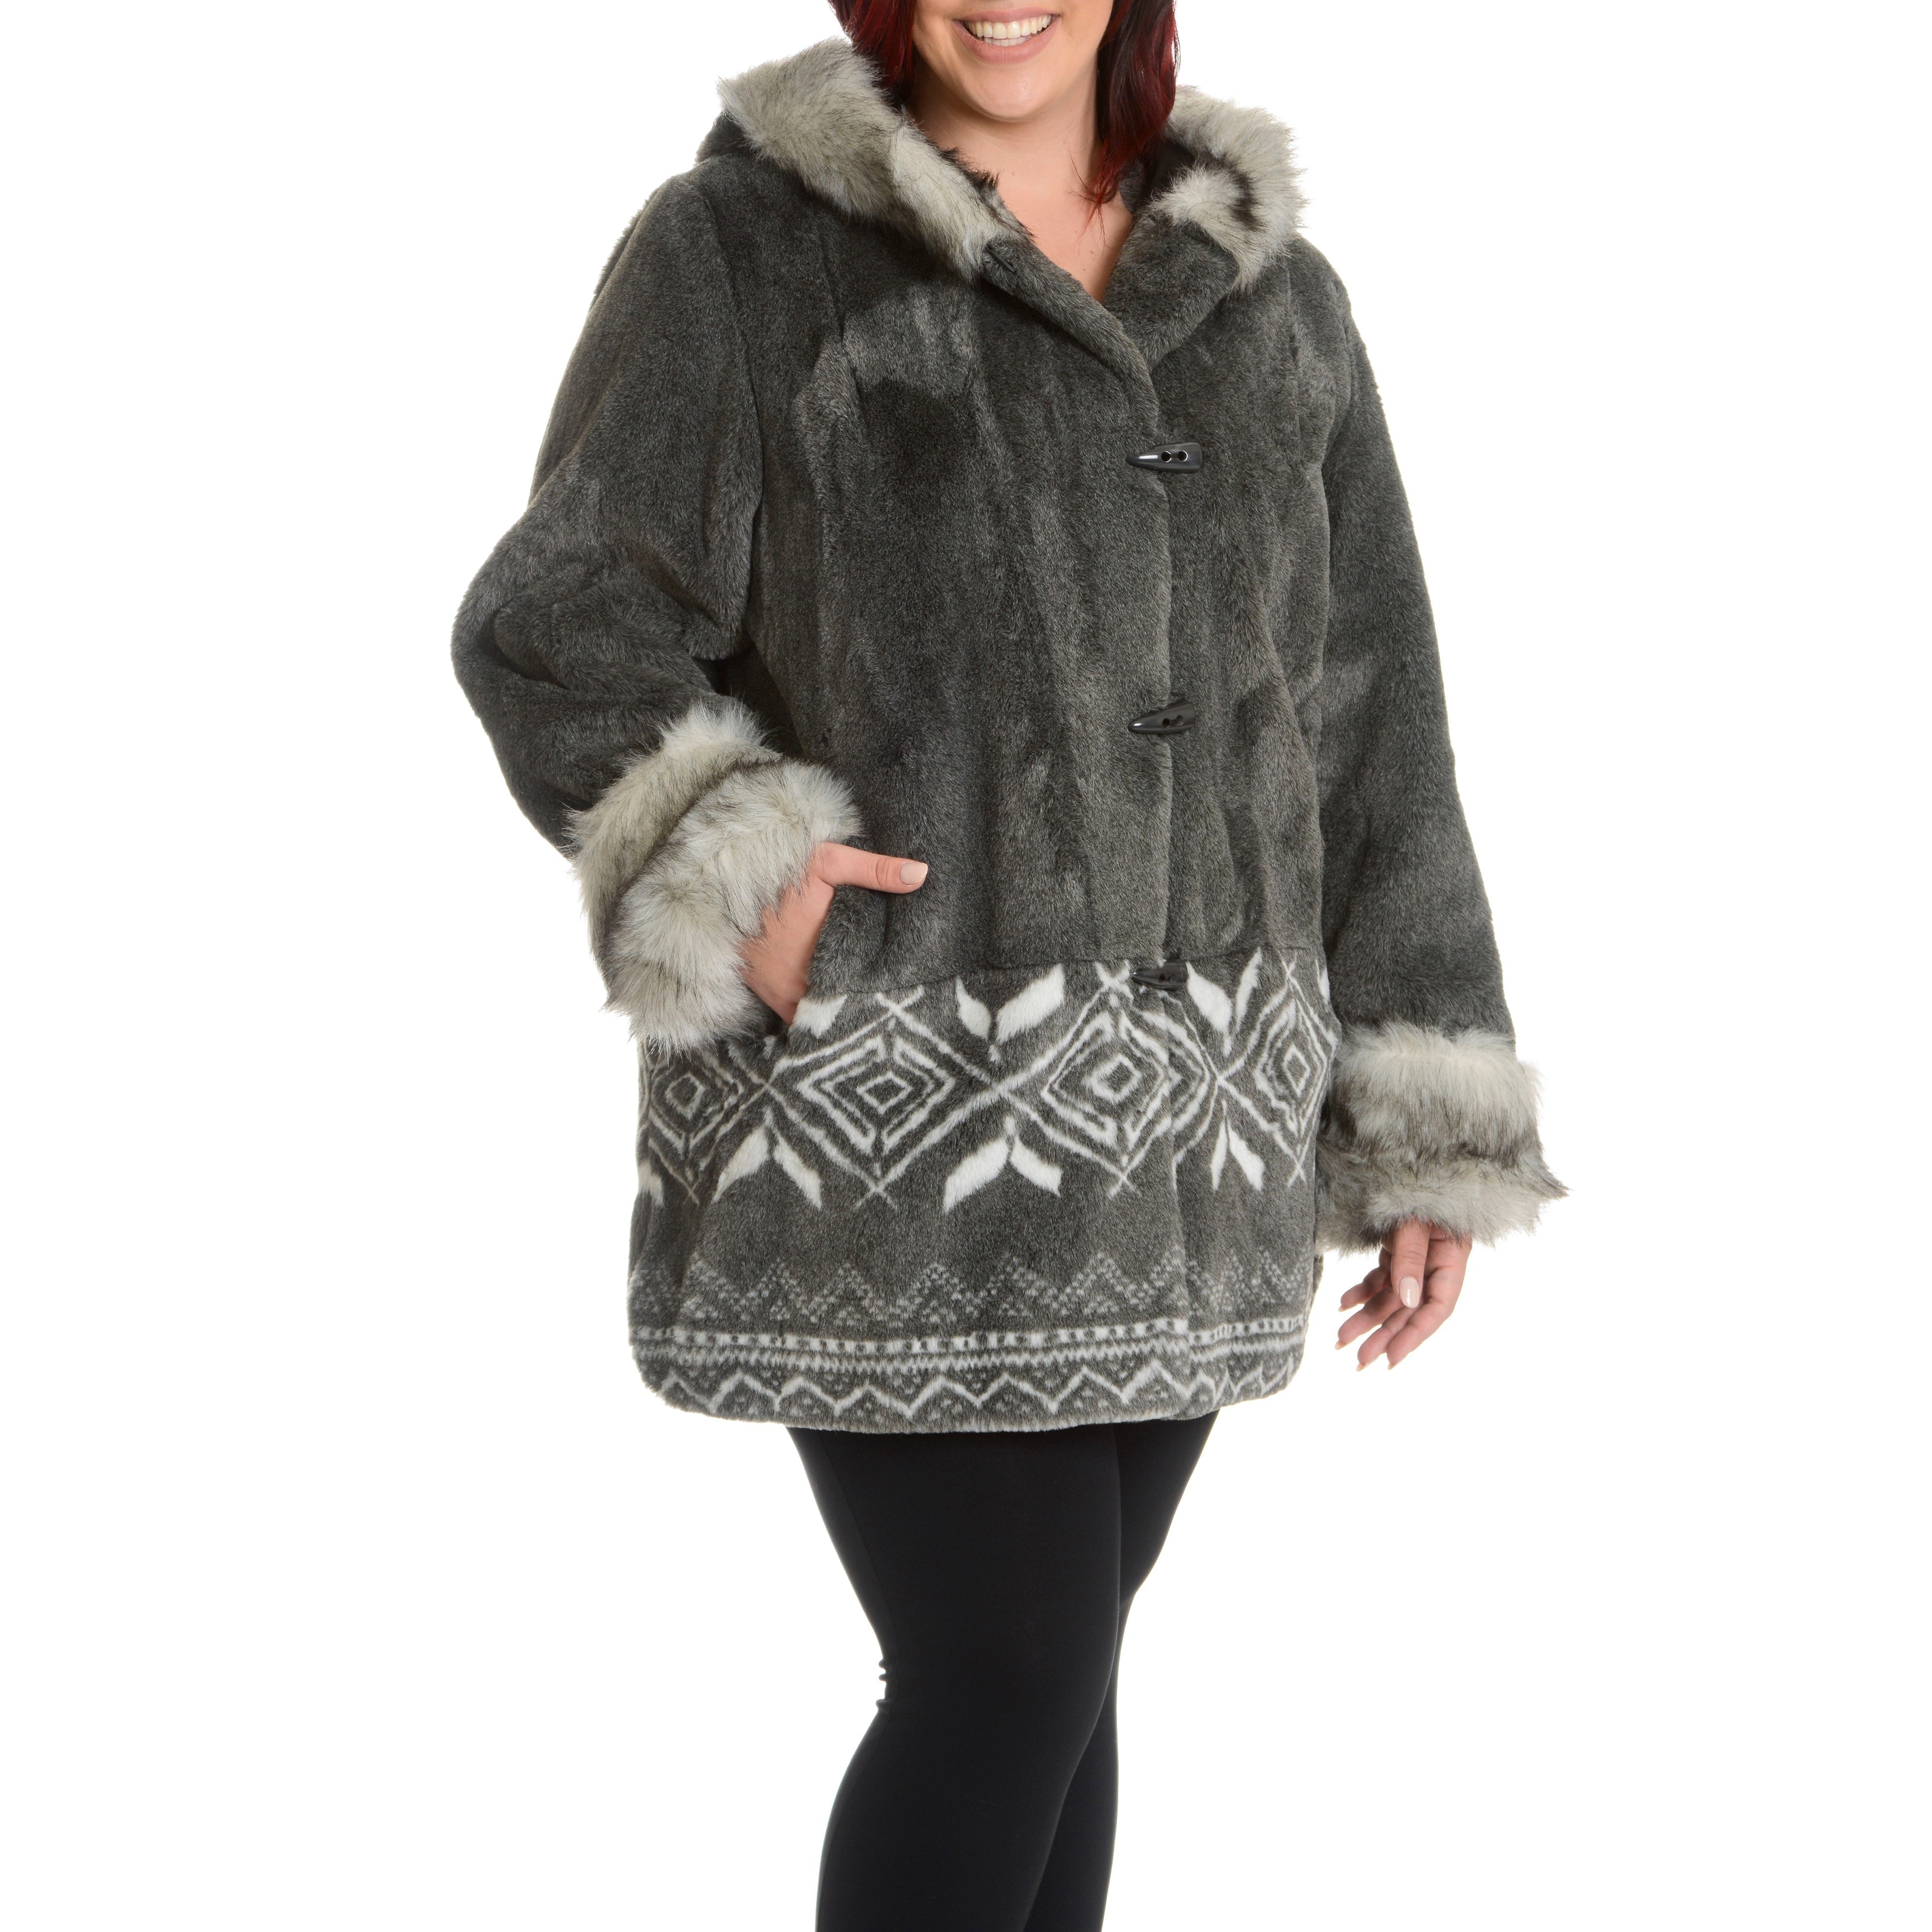 women's plus size fur coats